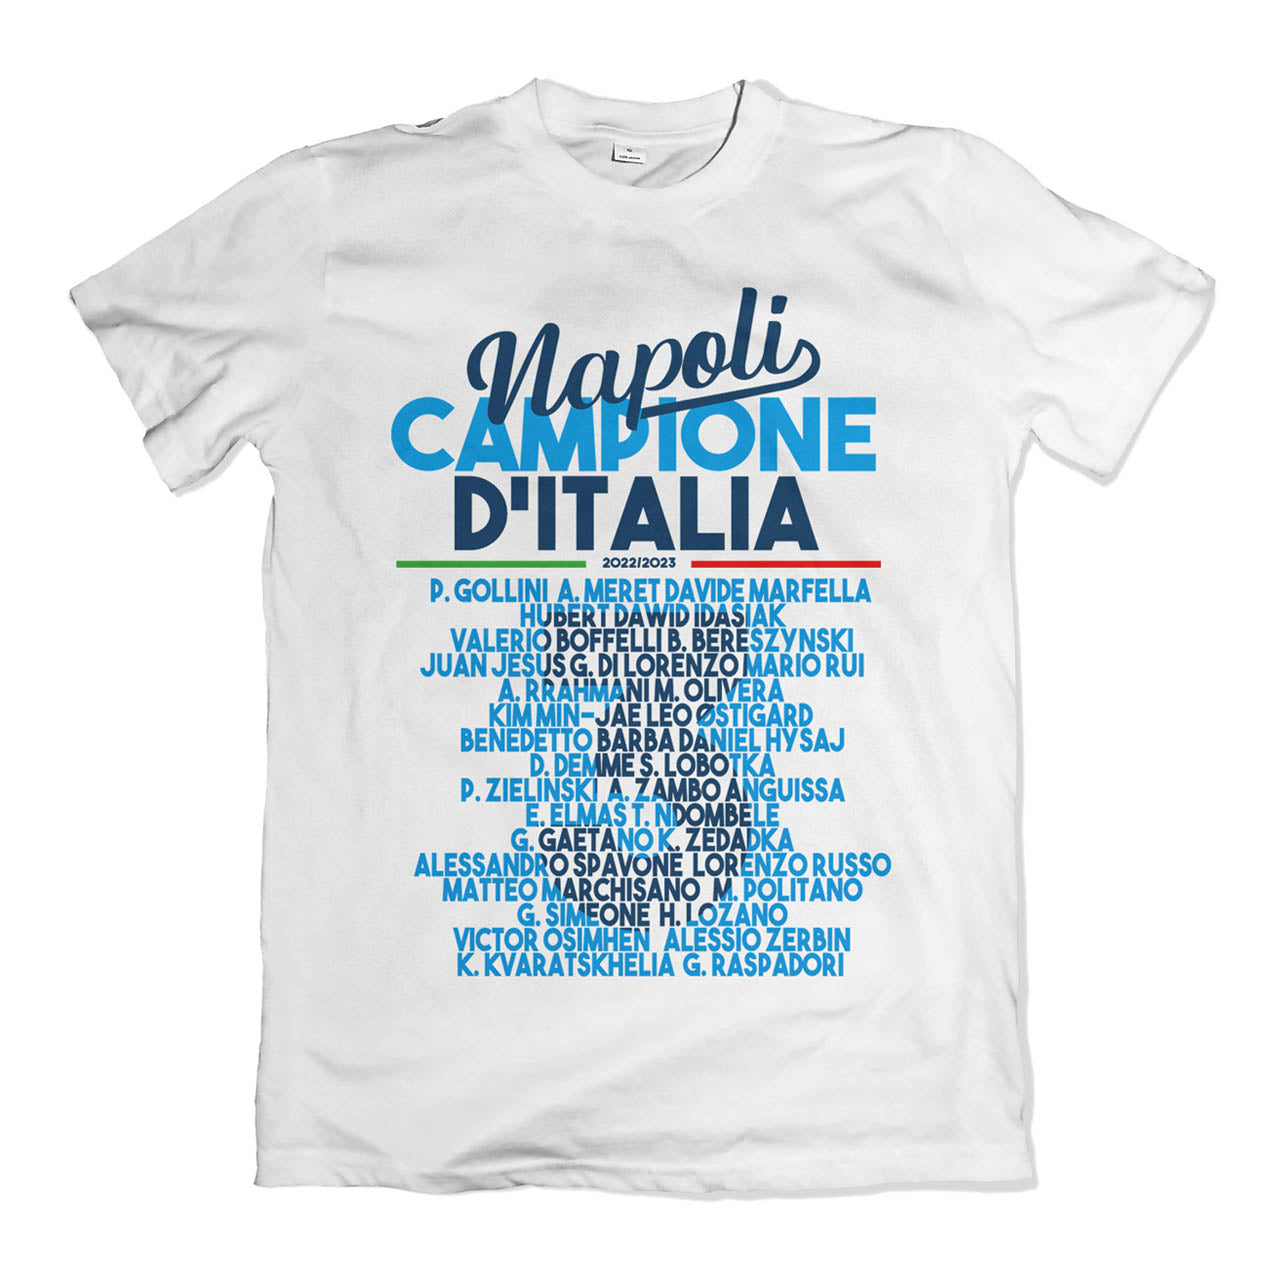 T-shirt Scudetto Formazione del Napoli